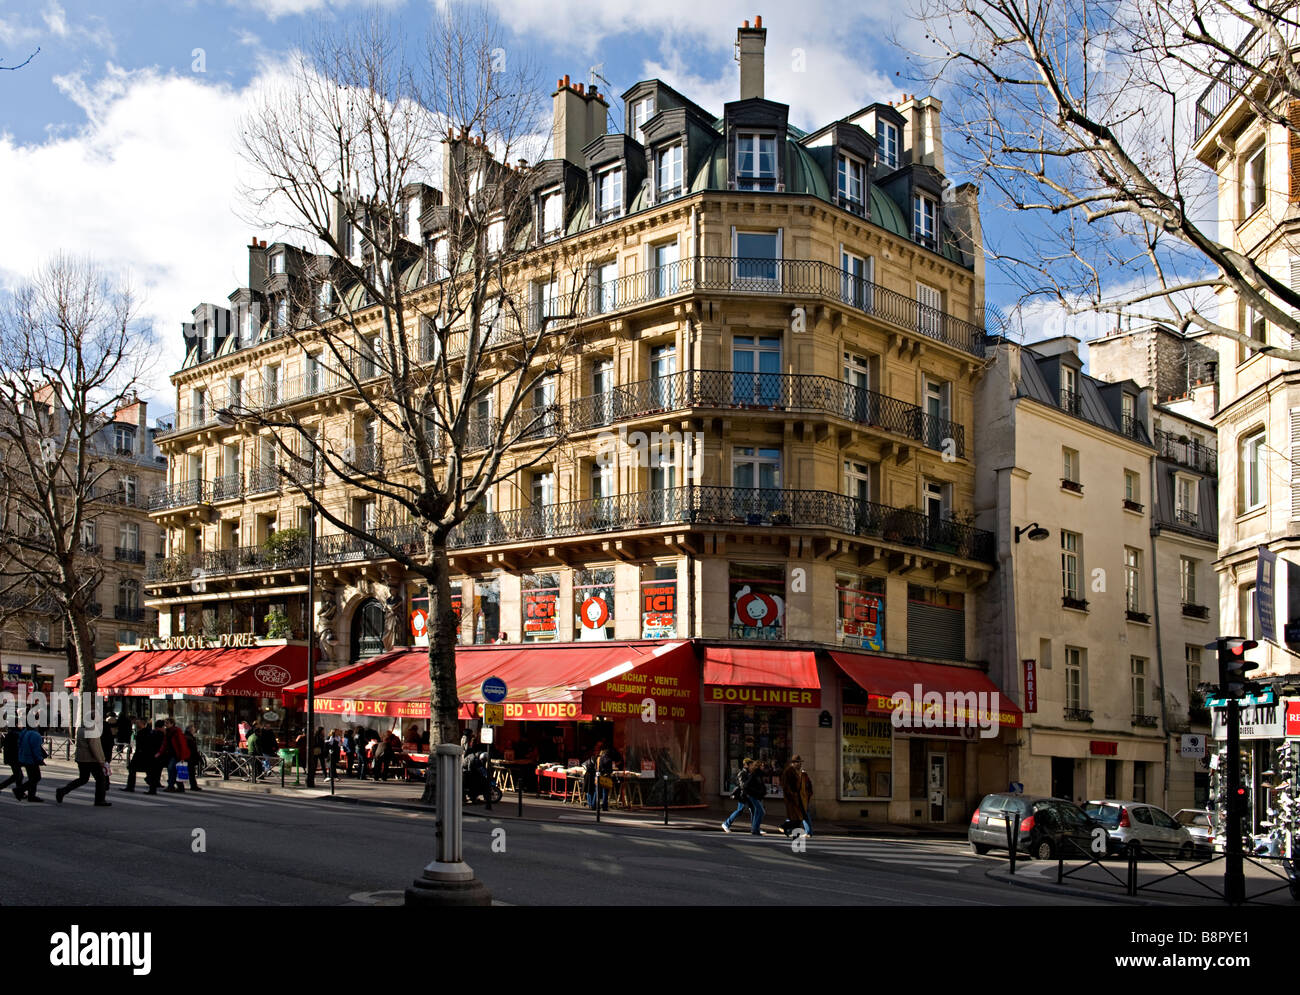 Boulevard Saint Michel Banque d'image et photos - Alamy